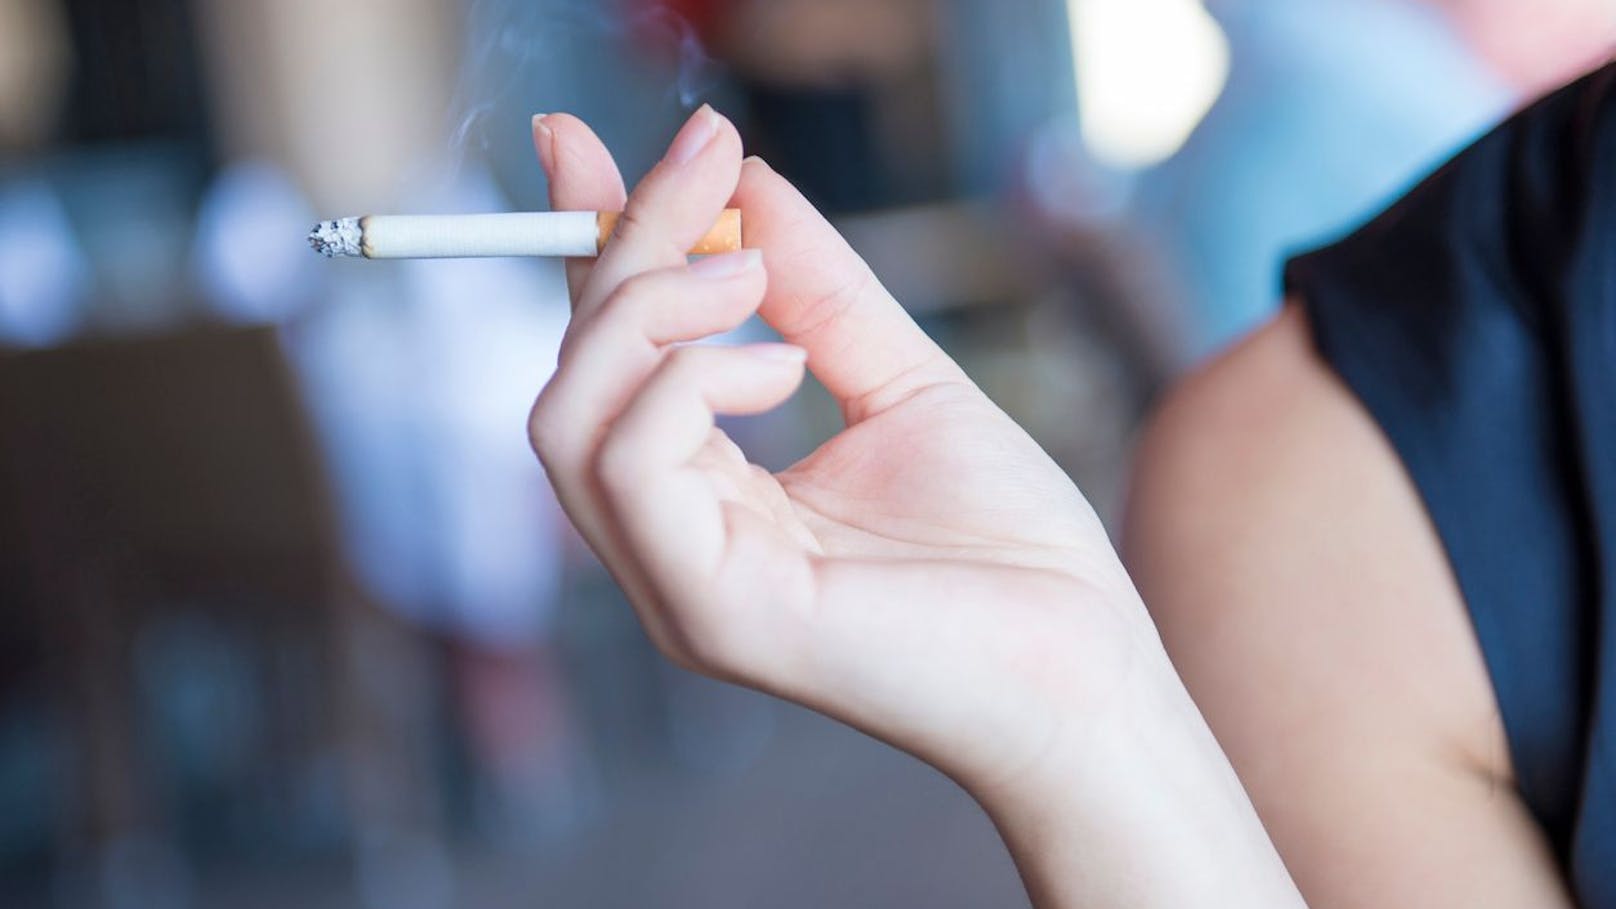 Hälfte der Raucher hat Angst vor dem Zigaretten-Tod